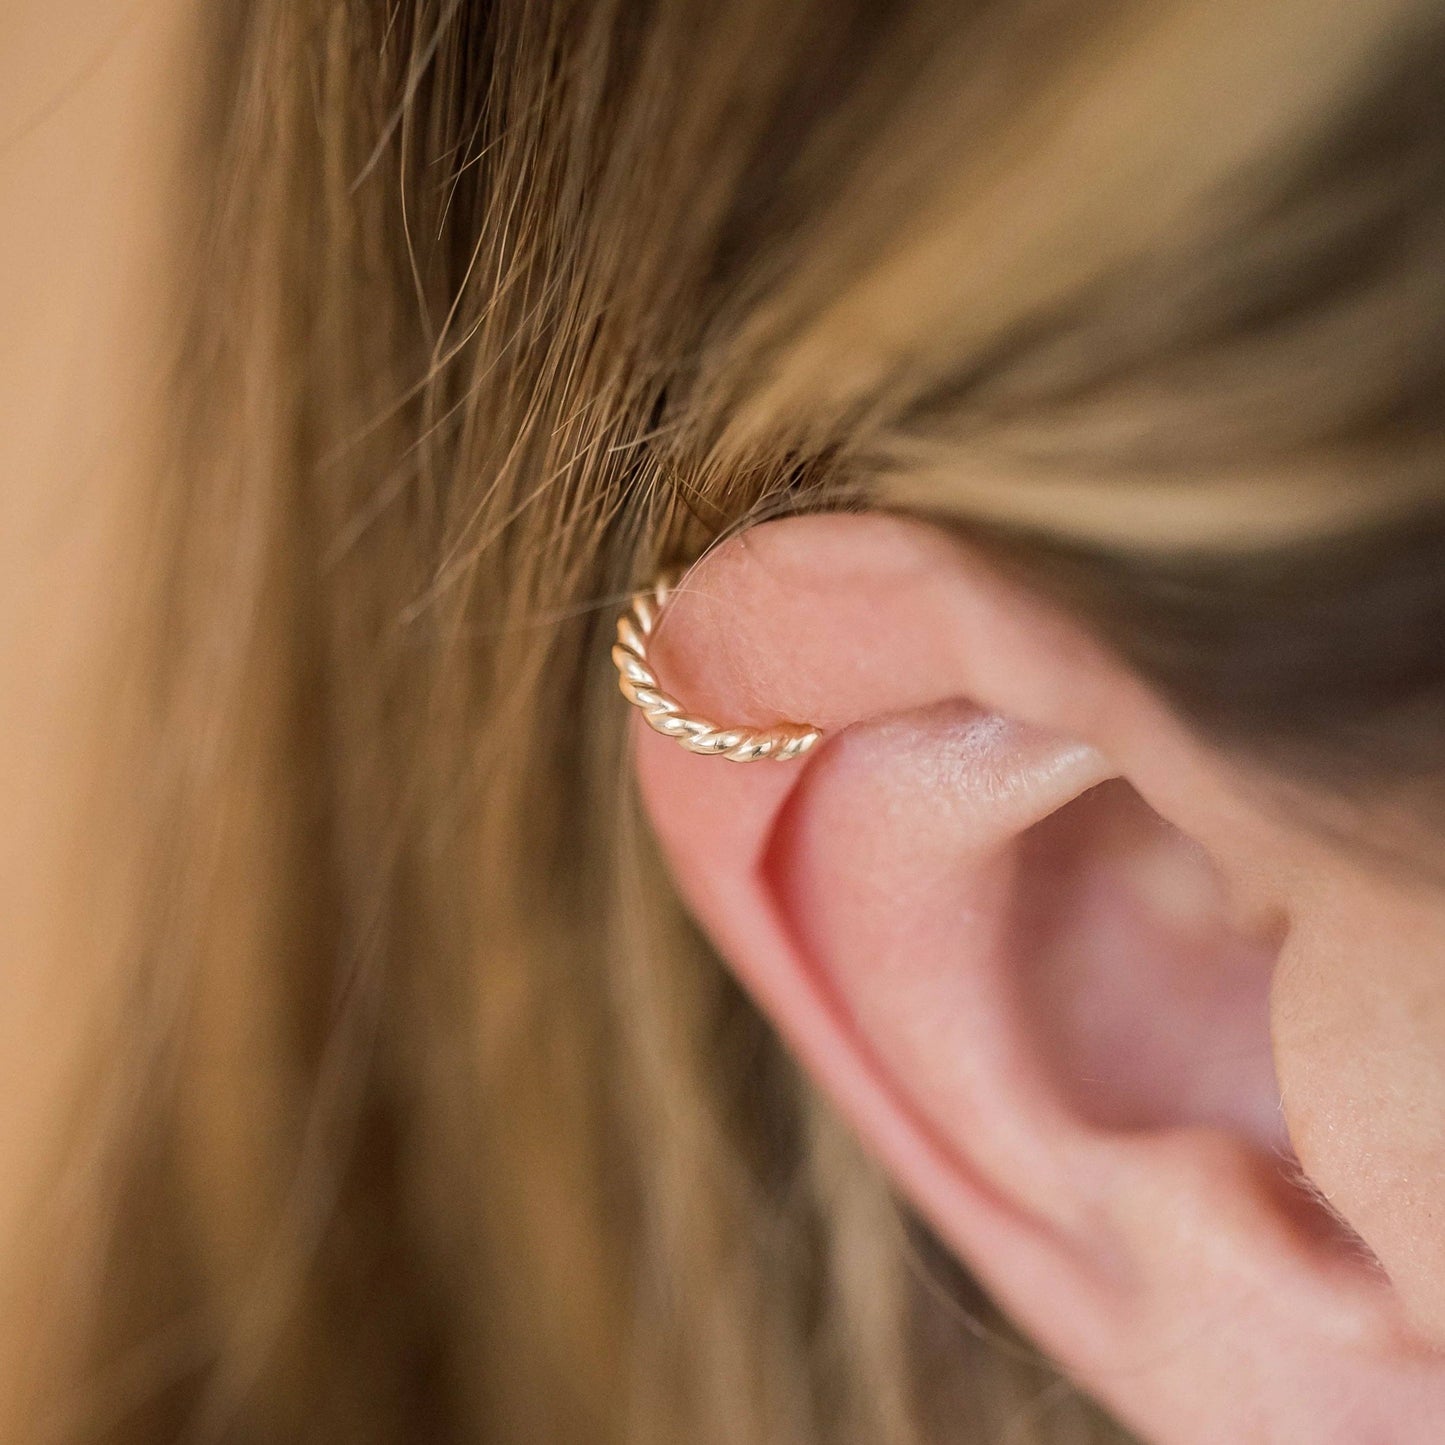 Ear Cuff Earrings - No Pierce Earrings- Twist Design